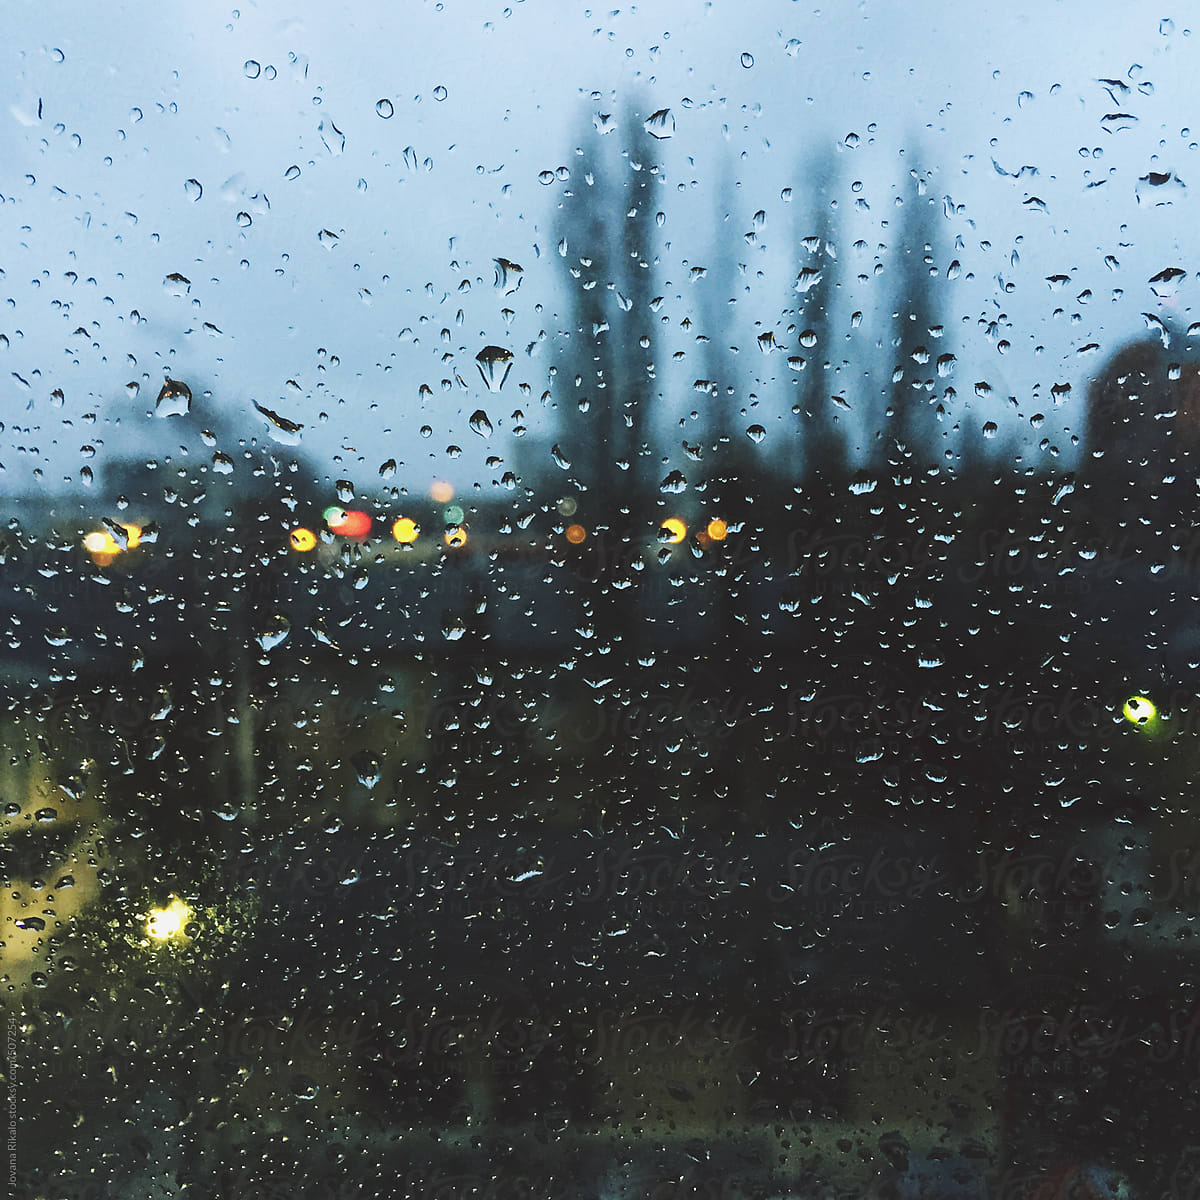 А за окном то дождь слушать